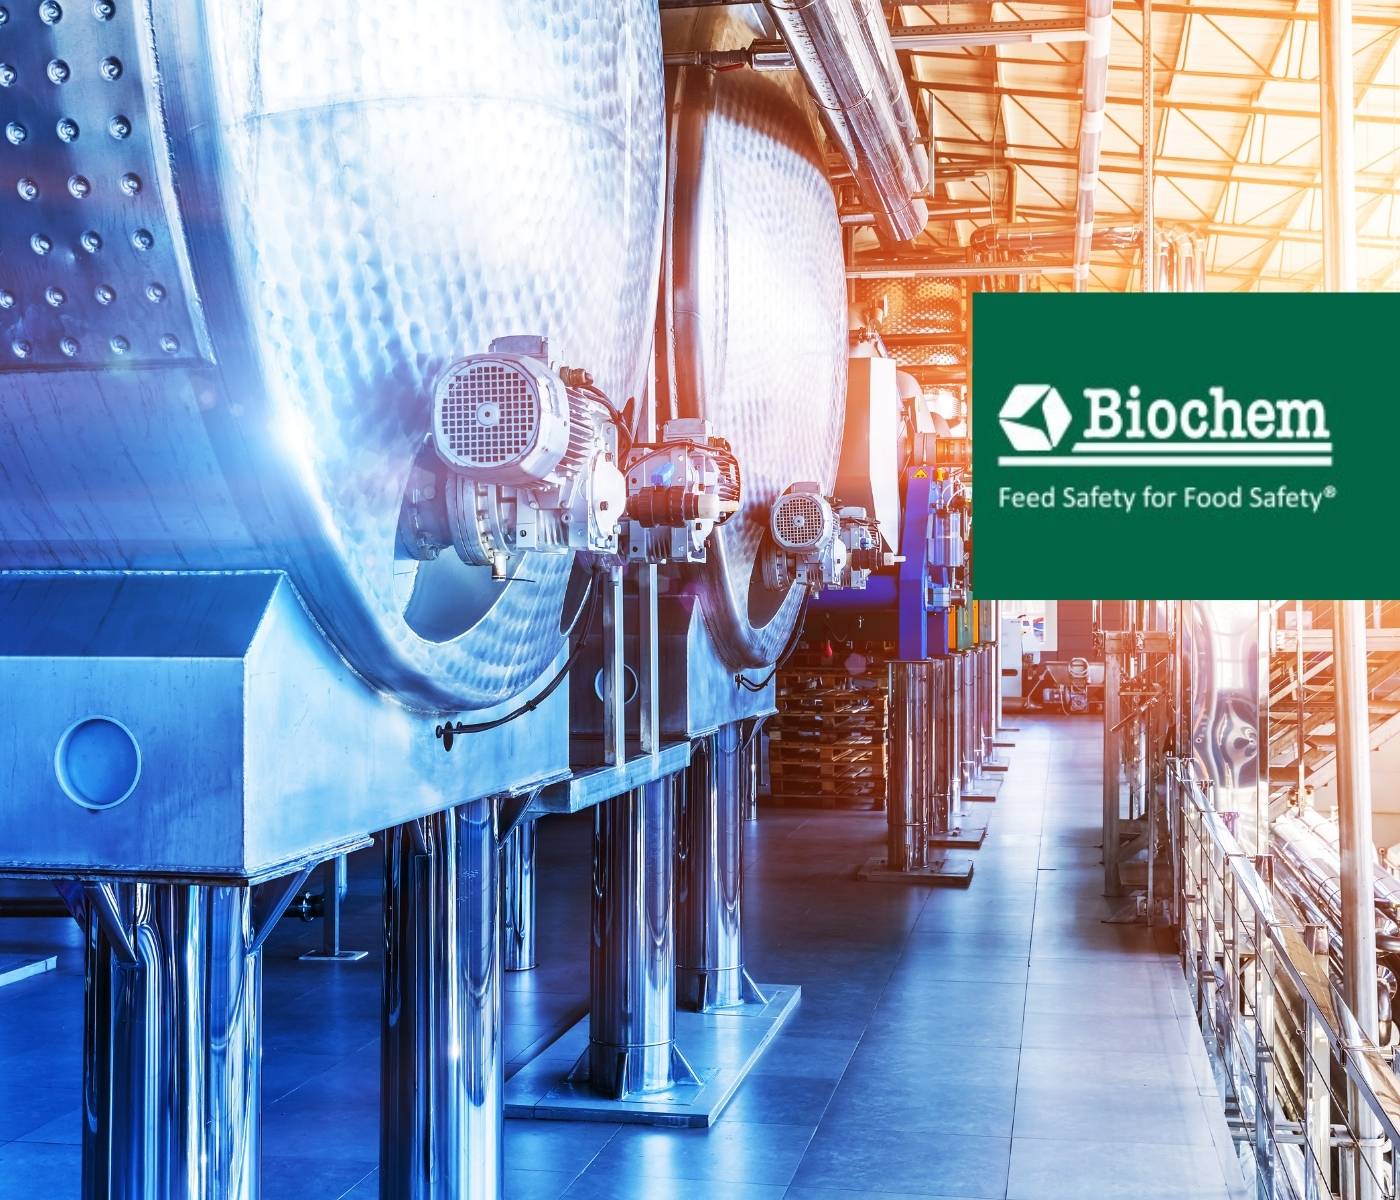 Biochem foca em crescimento com expansão da fábrica de aditivos...